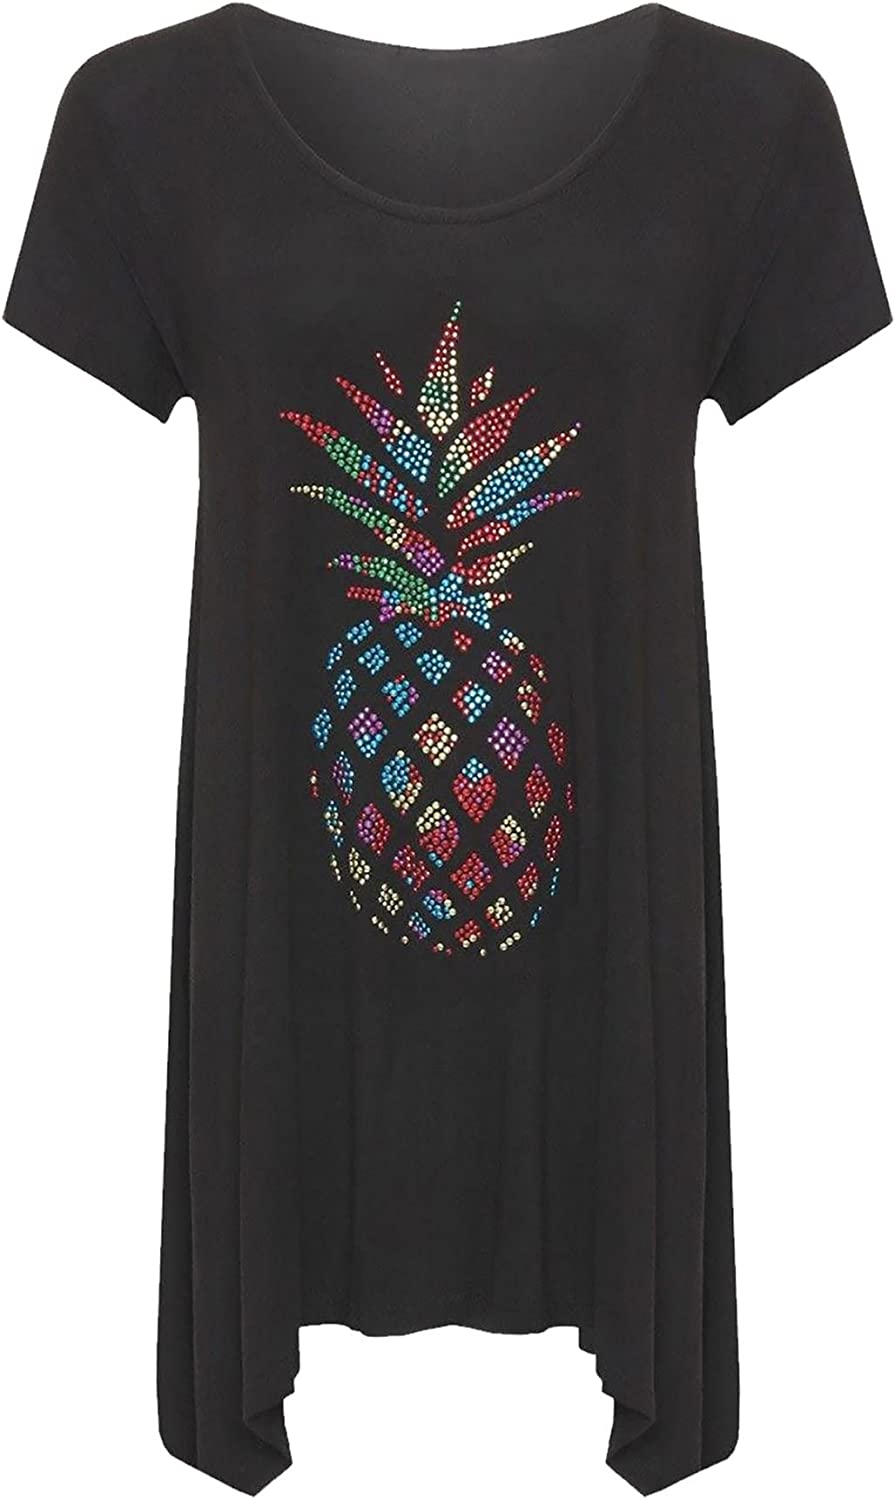 Womens Pineapple Diamante Short Sleeve Hanky Hem Top Tees Ladies Plus Size Shirt UK 14-28